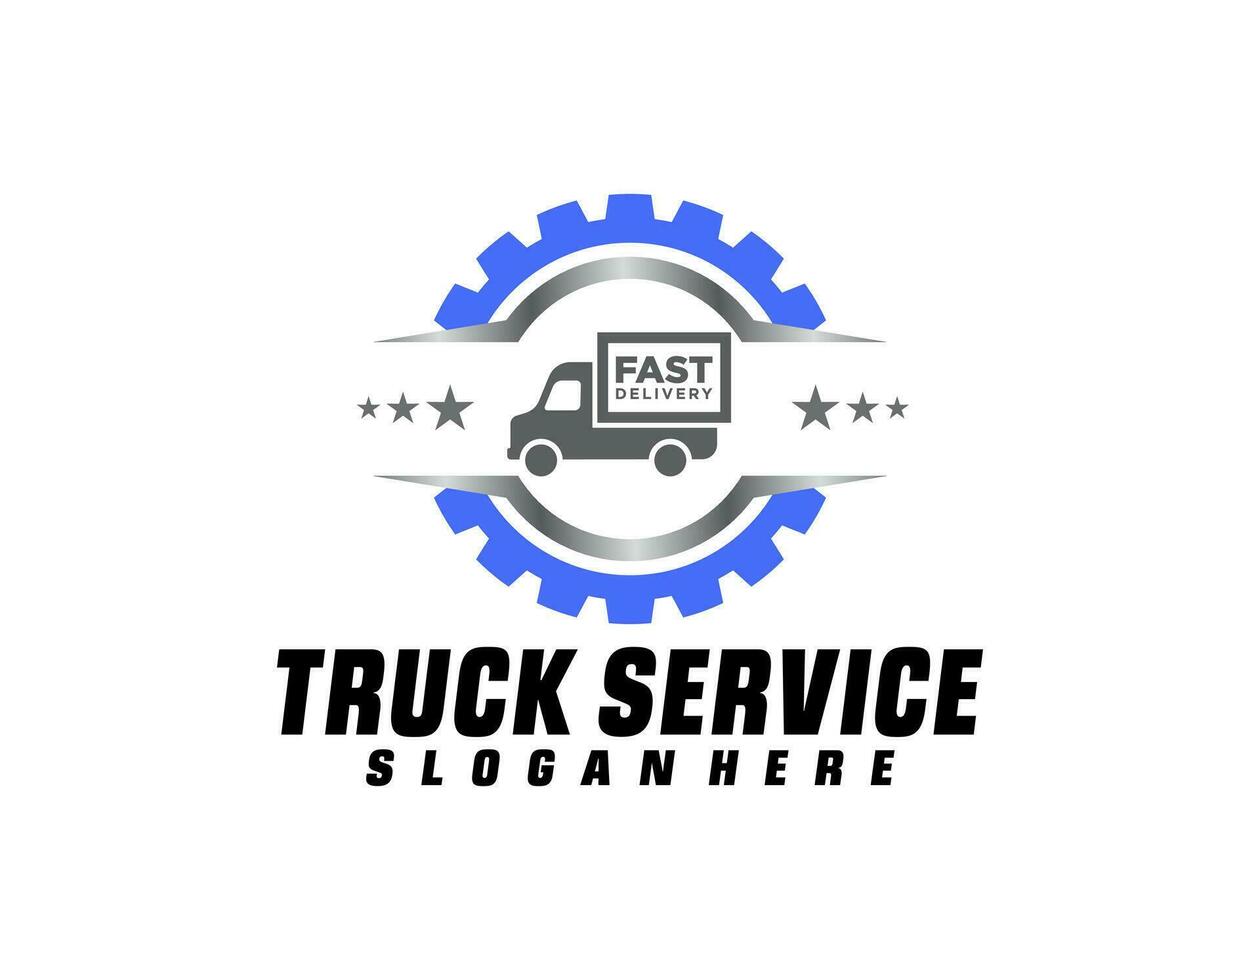 modelo de logotipo de caminhão, logotipo perfeito para negócios relacionados à indústria automotiva vetor